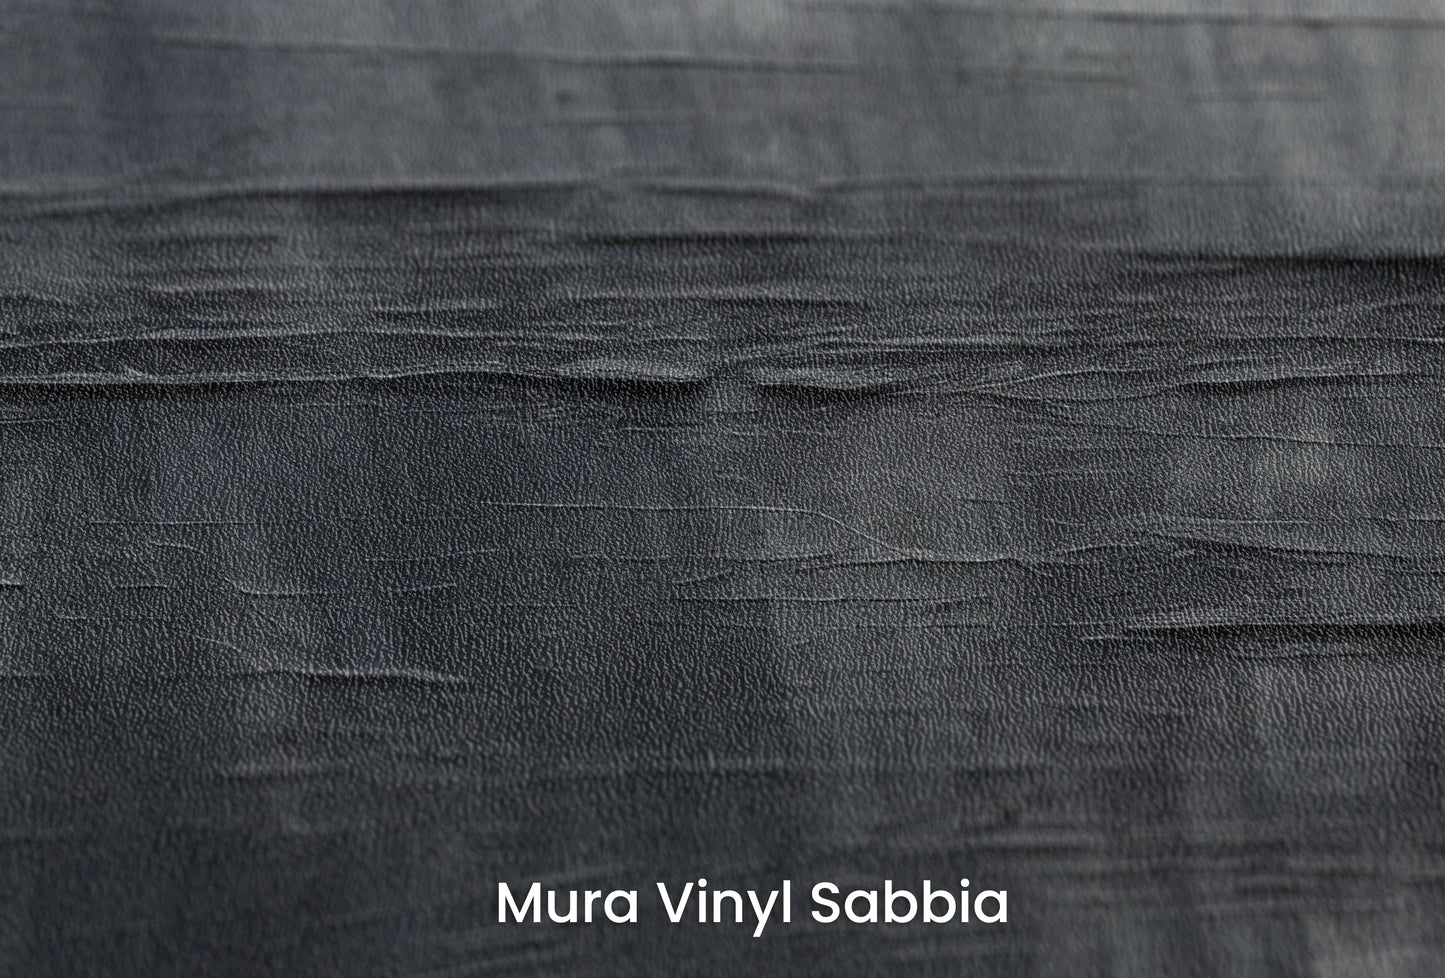 Zbliżenie na artystyczną fototapetę o nazwie Canvas Grayscale na podłożu Mura Vinyl Sabbia struktura grubego ziarna piasku.